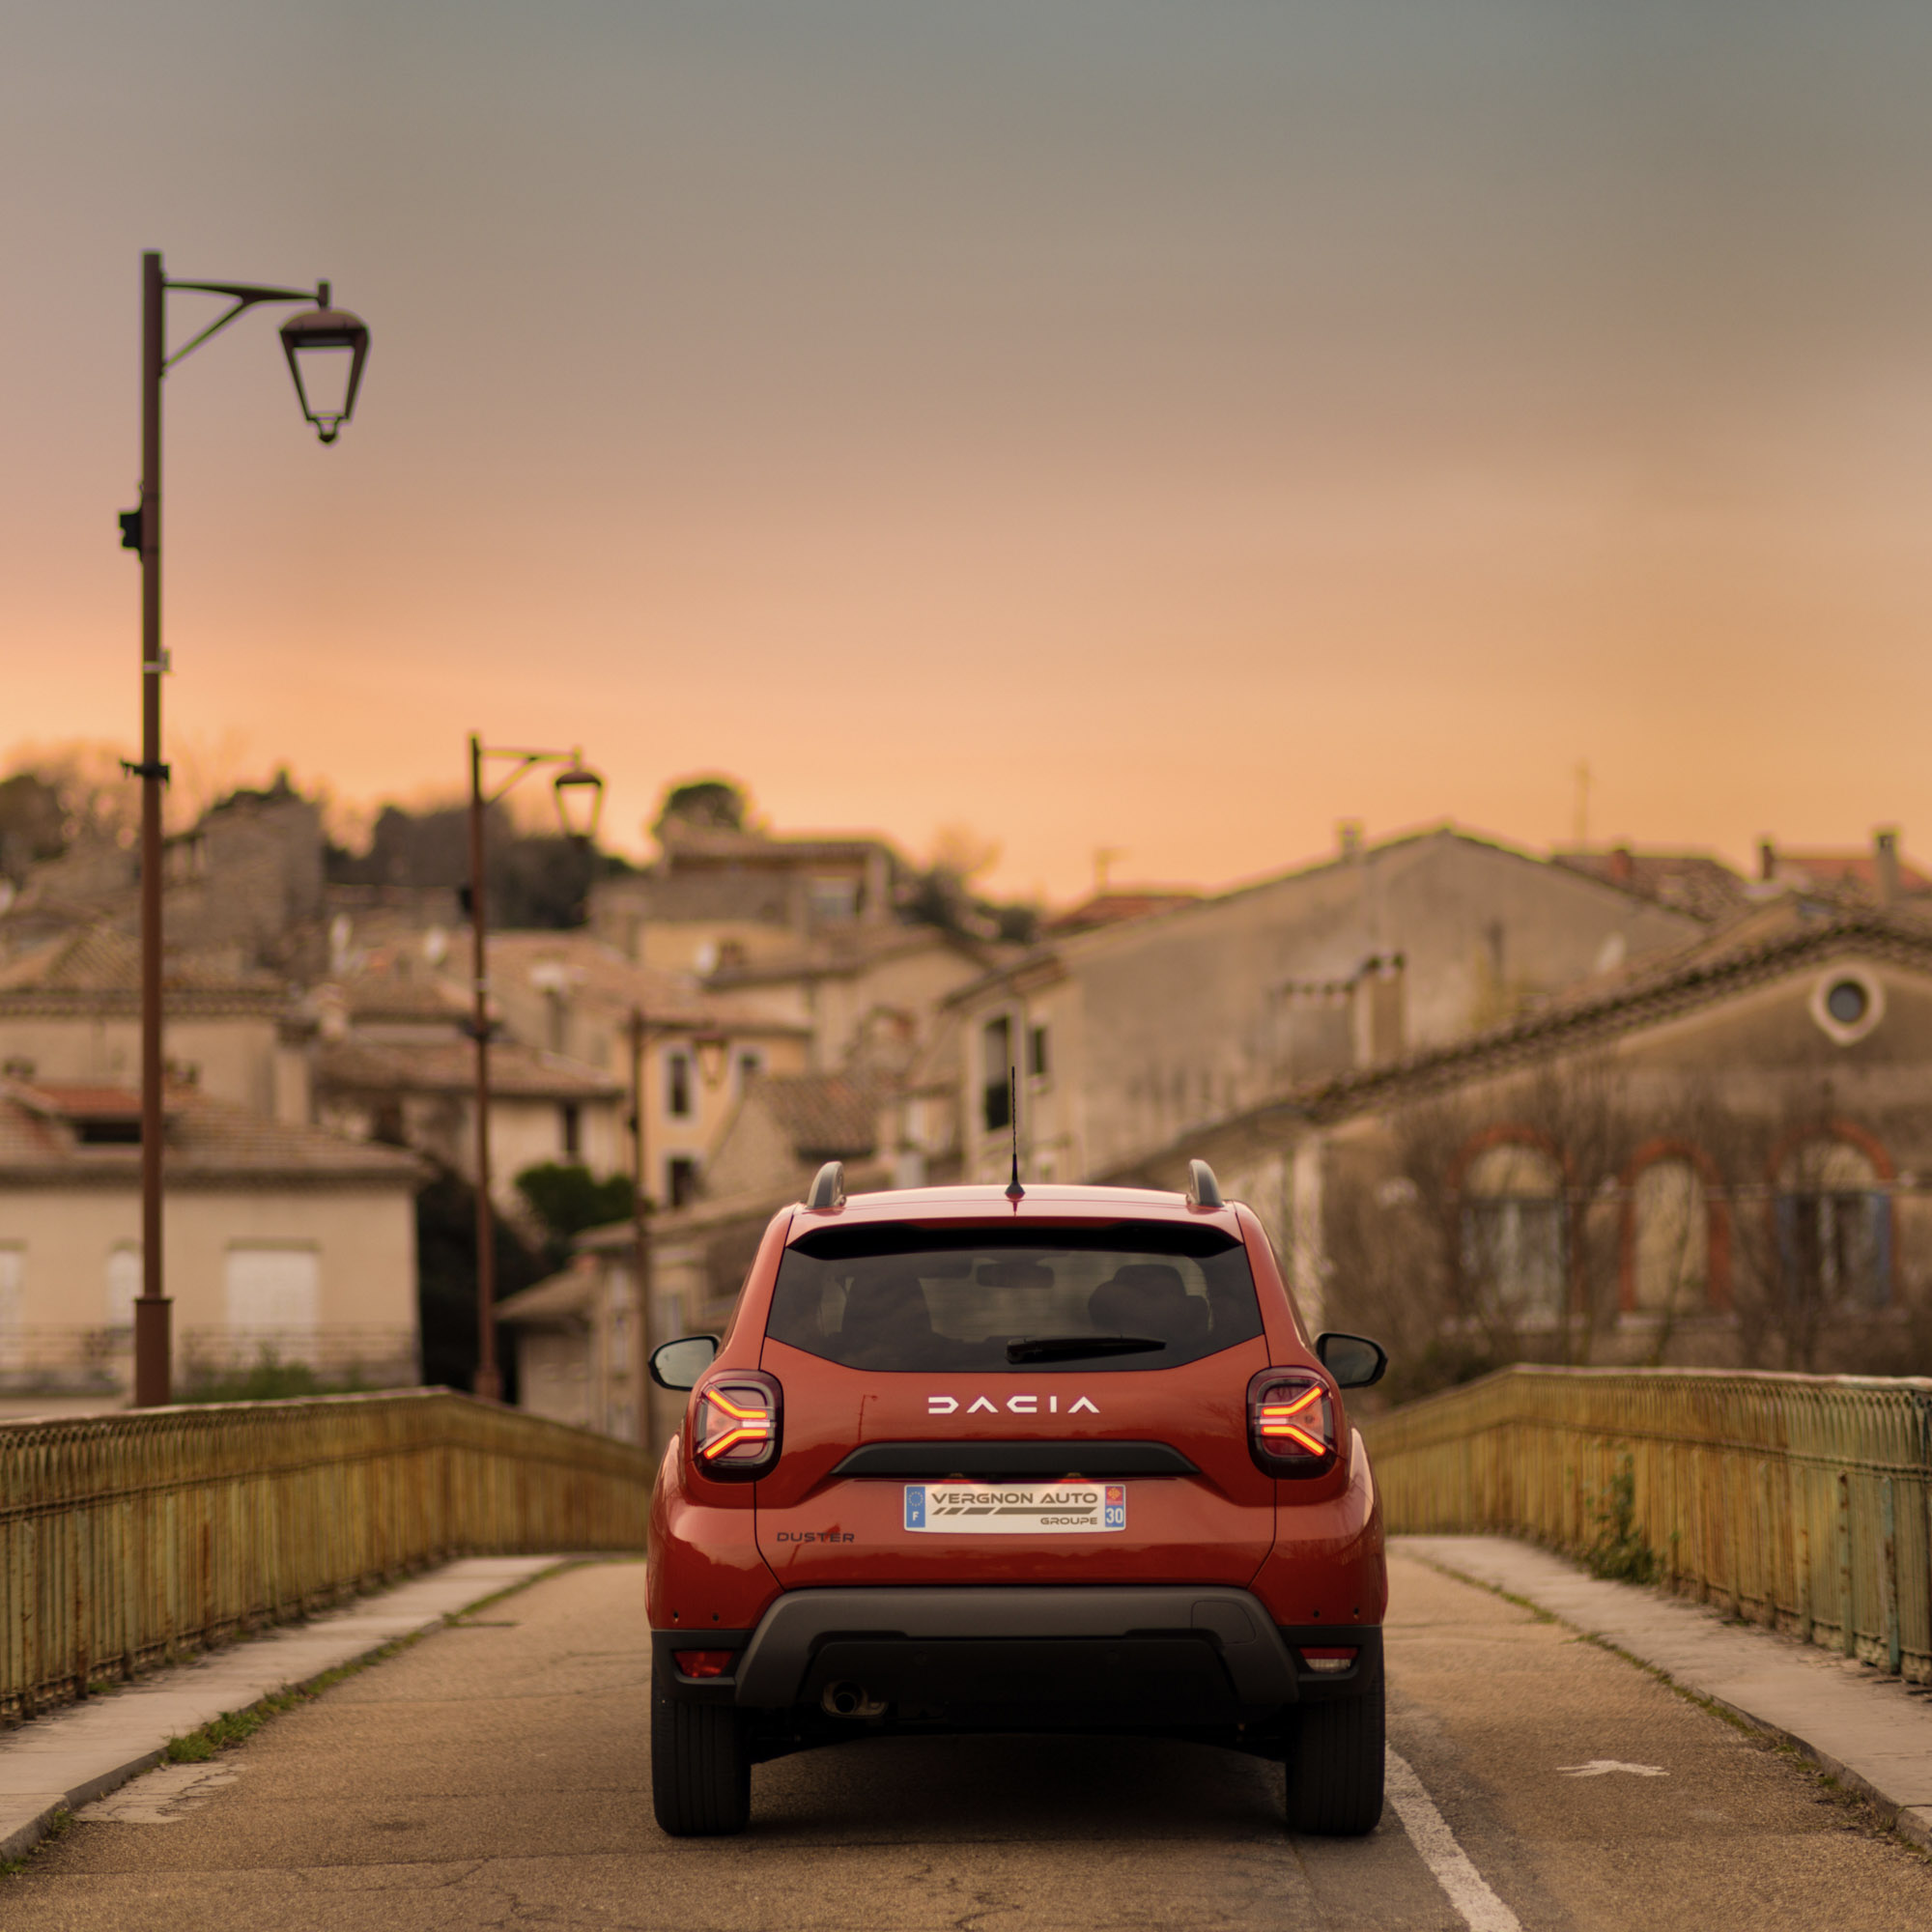 Le nouveau Dacia Duster en direction du centre historique de Sauve, en Piémont cévenol, dans le Gard.